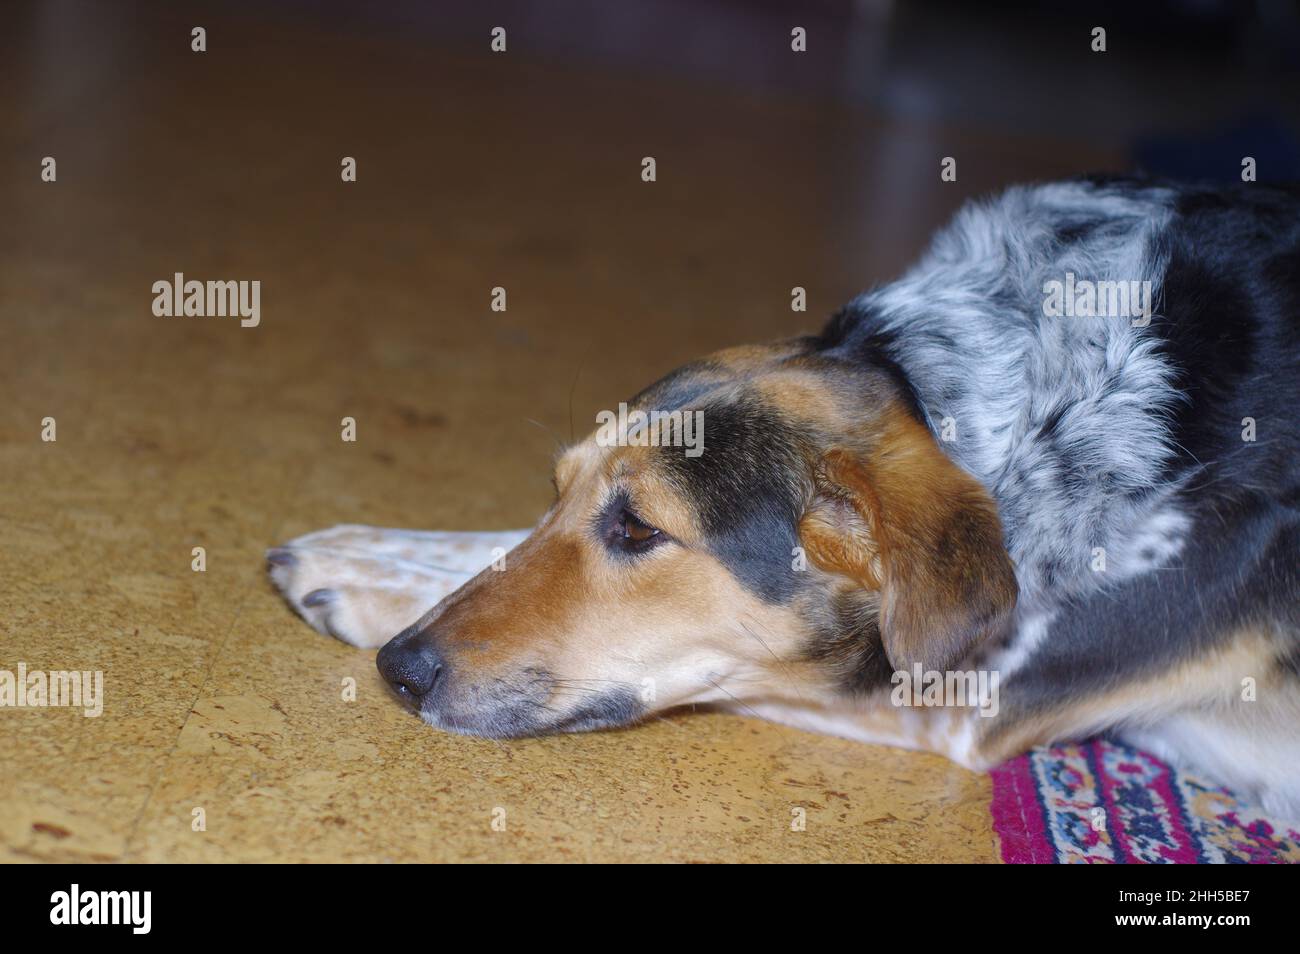 Innenportrait eines niedlichen Jagdhundes, der auf einem Boden liegt, während der wartende Meister nach Hause zurückkehren würde Stockfoto